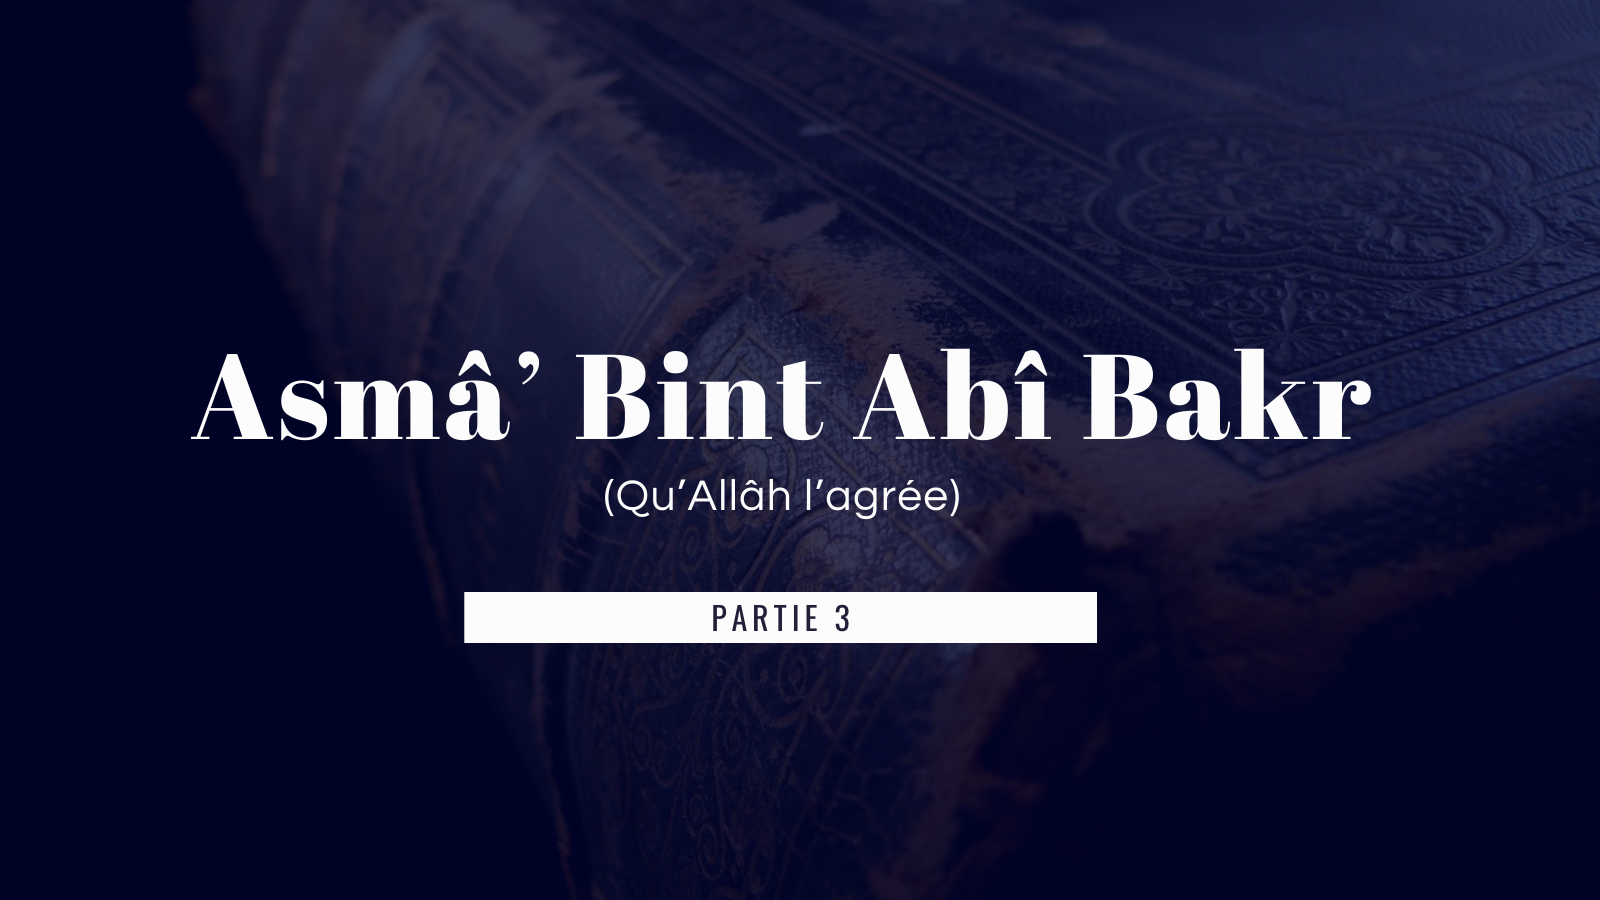 La vie de Asmâ’ Bint Abî Bakr avec les compagnons du prophète ( Partie 3 )